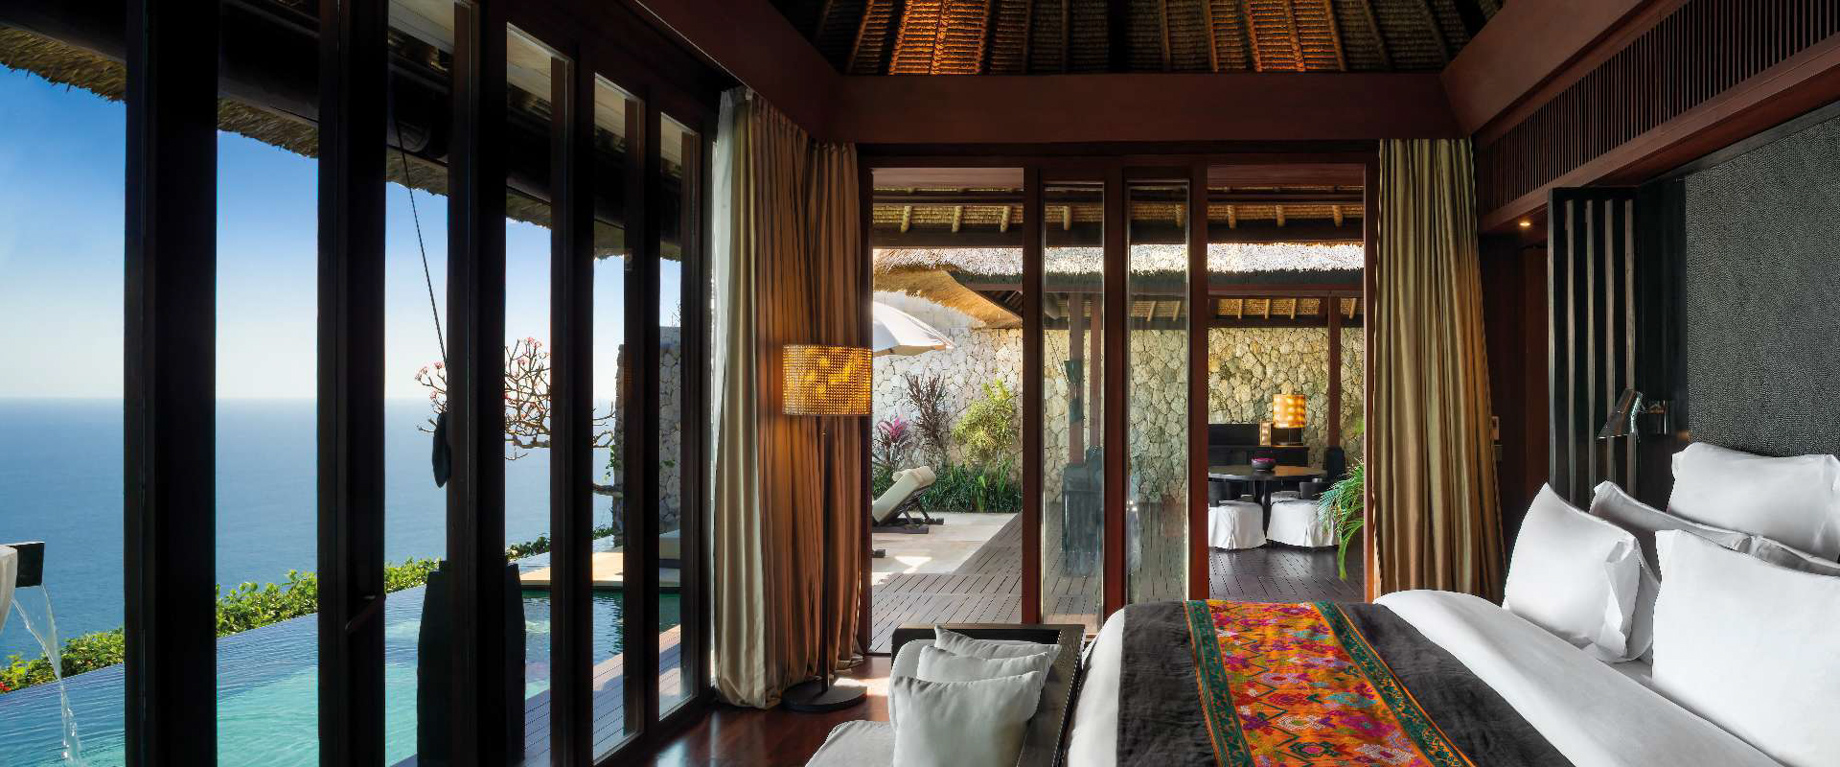 Bvlgari Resort Bali - Uluwatu, Bali, Indonesia - Ocean Cliff Villa Bedroom Ocean View